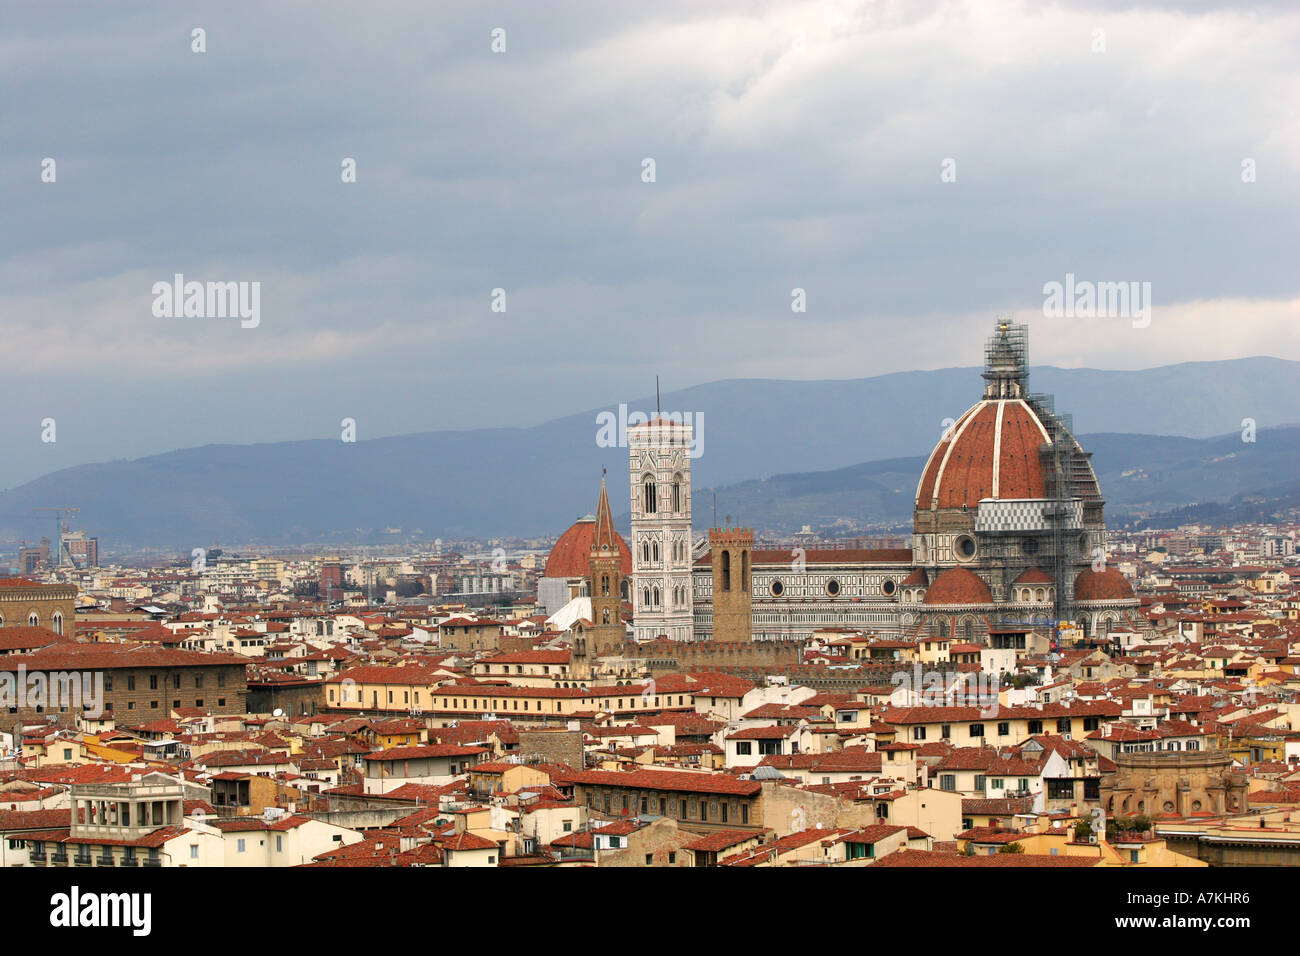 Vista aerea del Duomo e del campanile capanile che domina la città di Firenze skyline in Toscana Italia centrale Europa Foto Stock